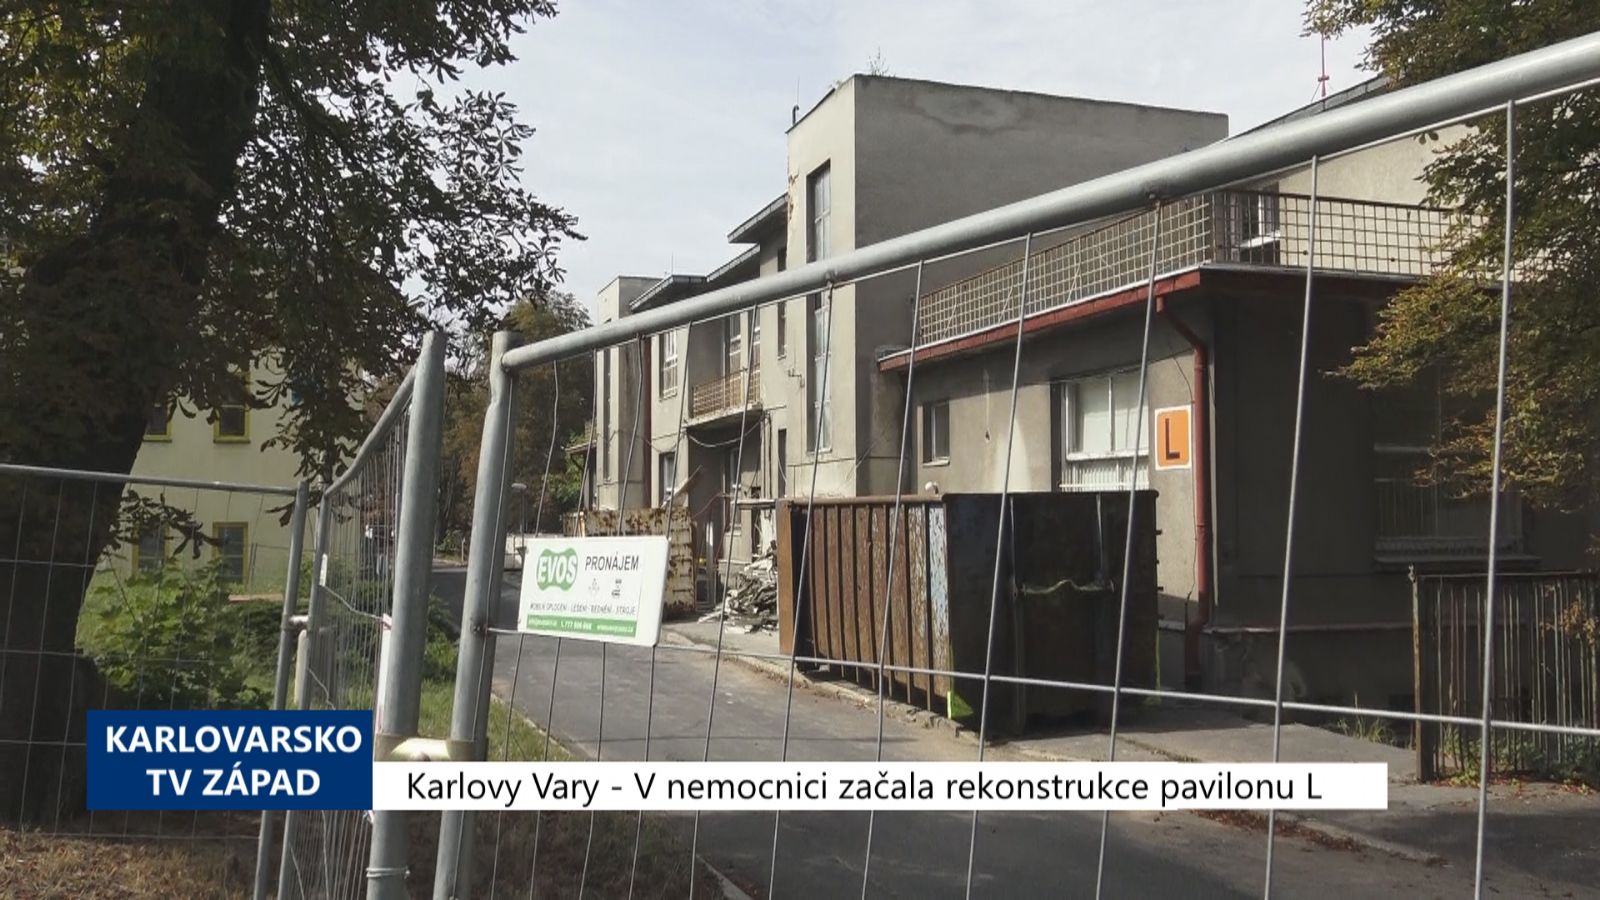 Karlovy Vary: V nemocnici začala rekonstrukce pavilonu L (TV Západ)